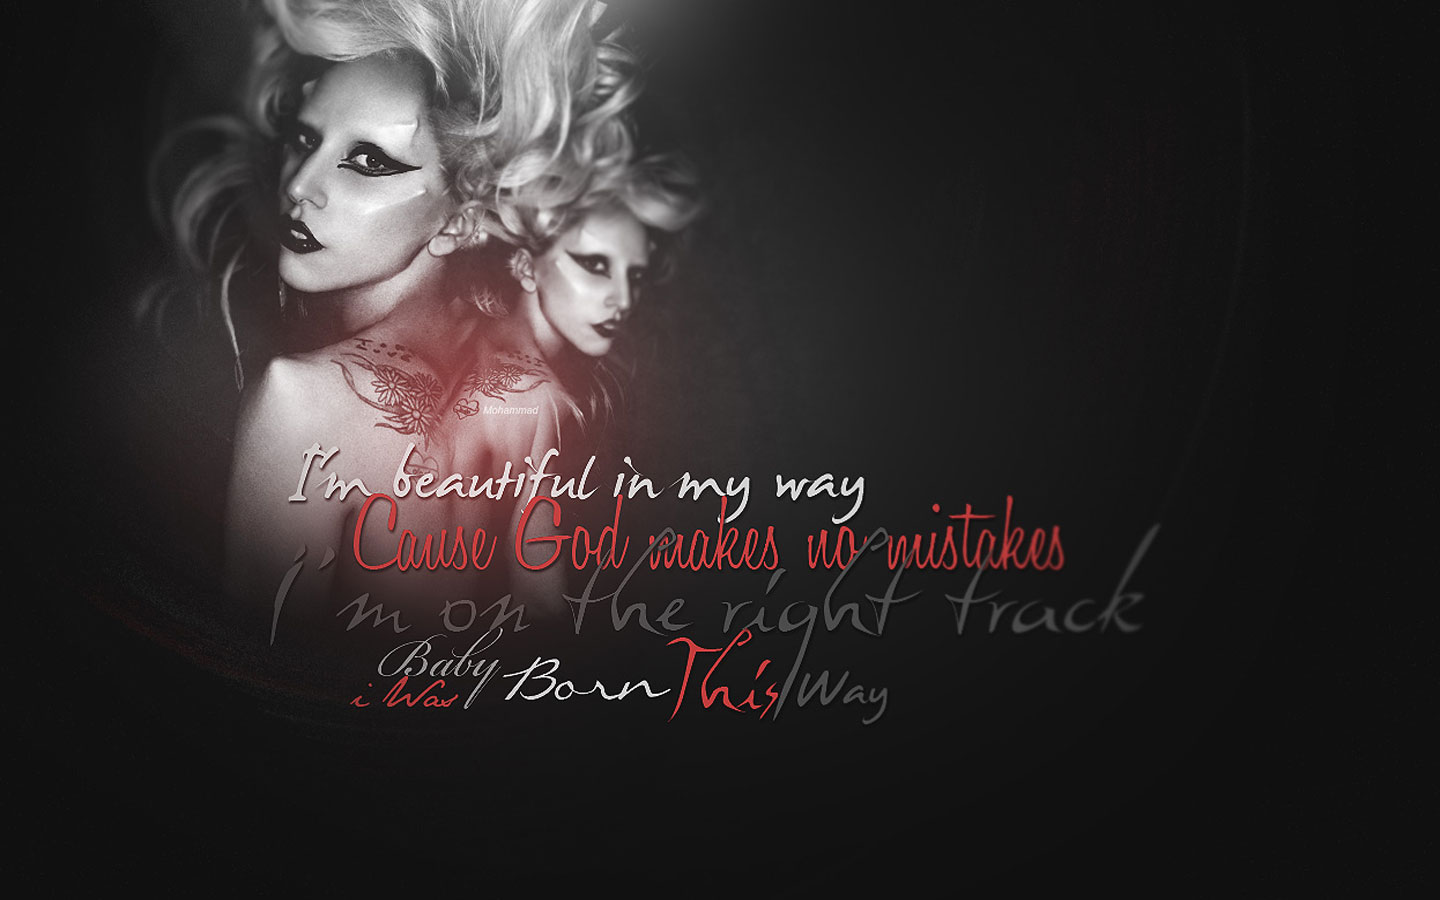 Papel De Parede Lady Gaga Beautiful In My Way Wallpaper Para